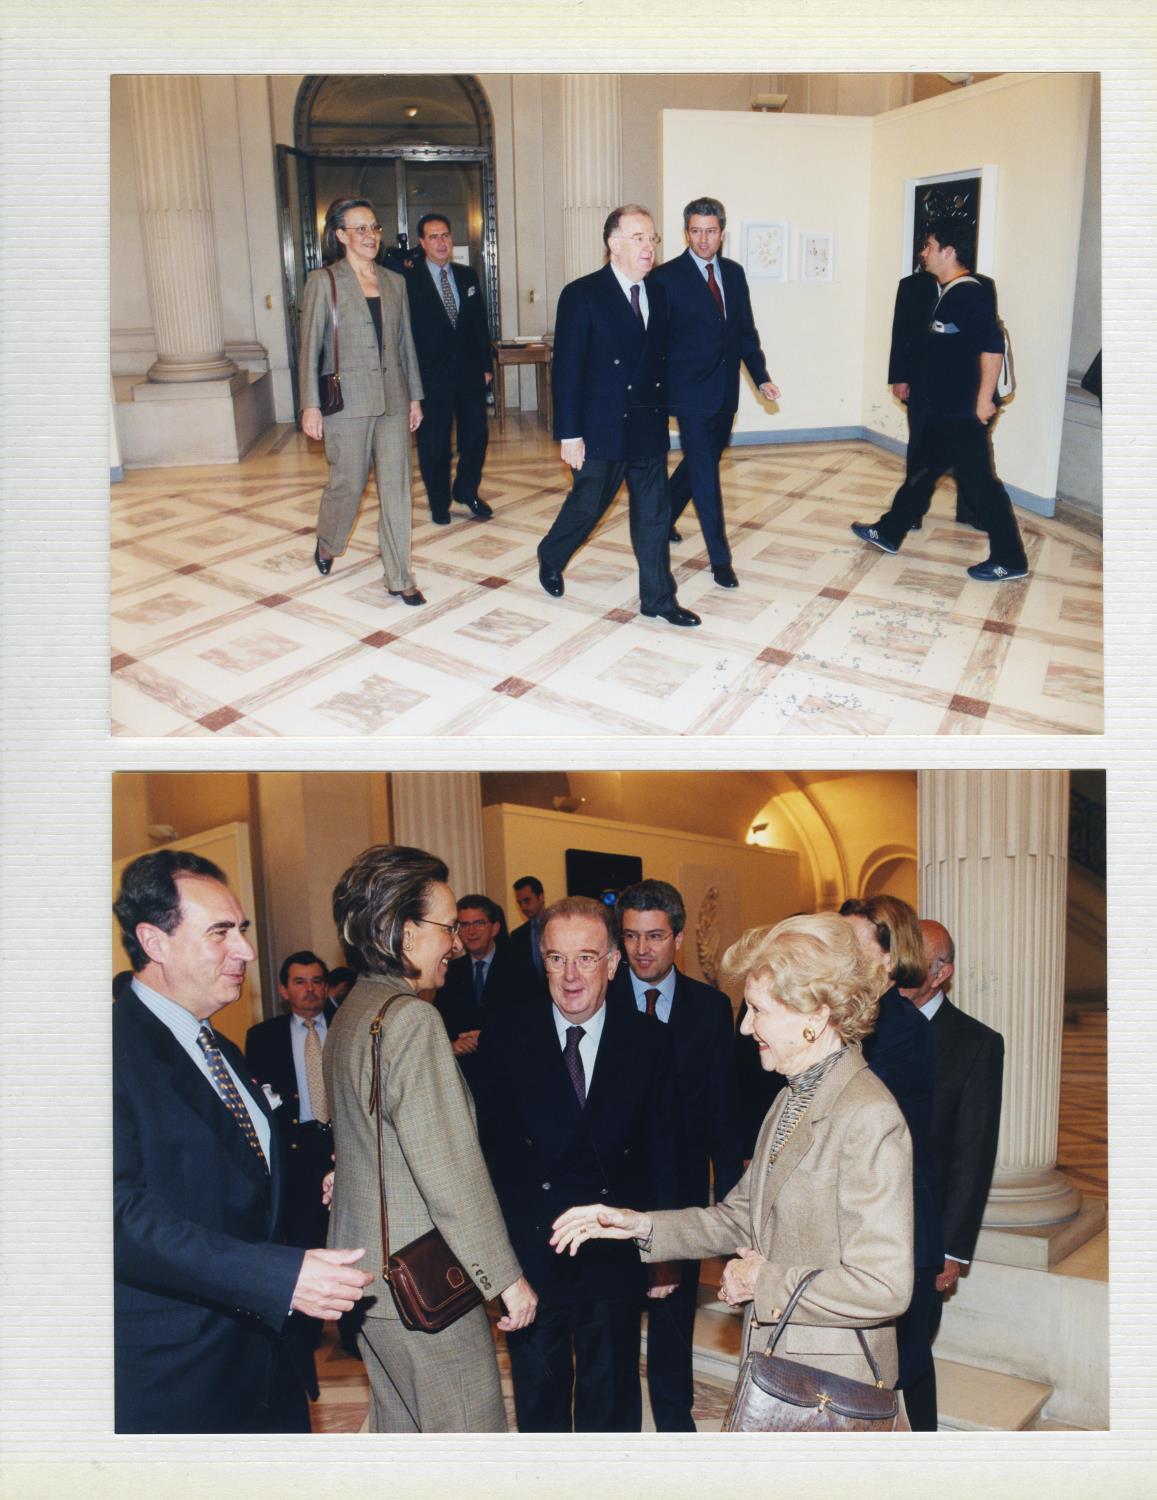 Fotografias em álbum da visita oficial do presidente da República Portuguesa, Jorge Sampaio, e da Primeira-dama, Maria José Ritta